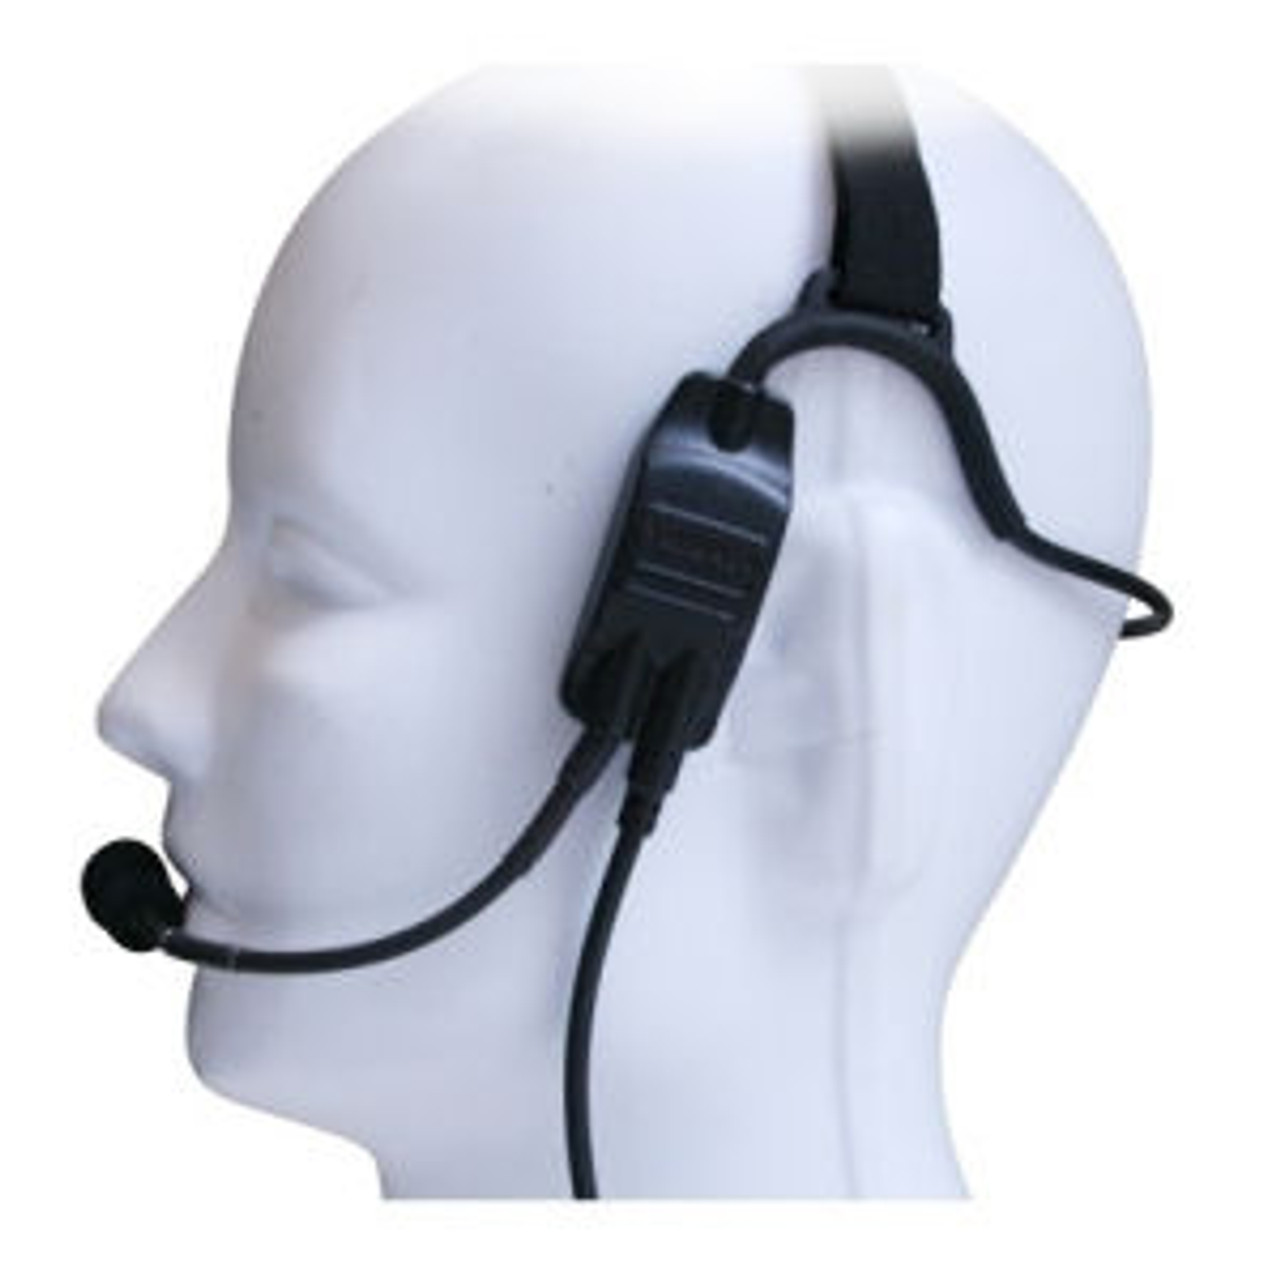 Kenwood TK-290 Temple Transducer Headset